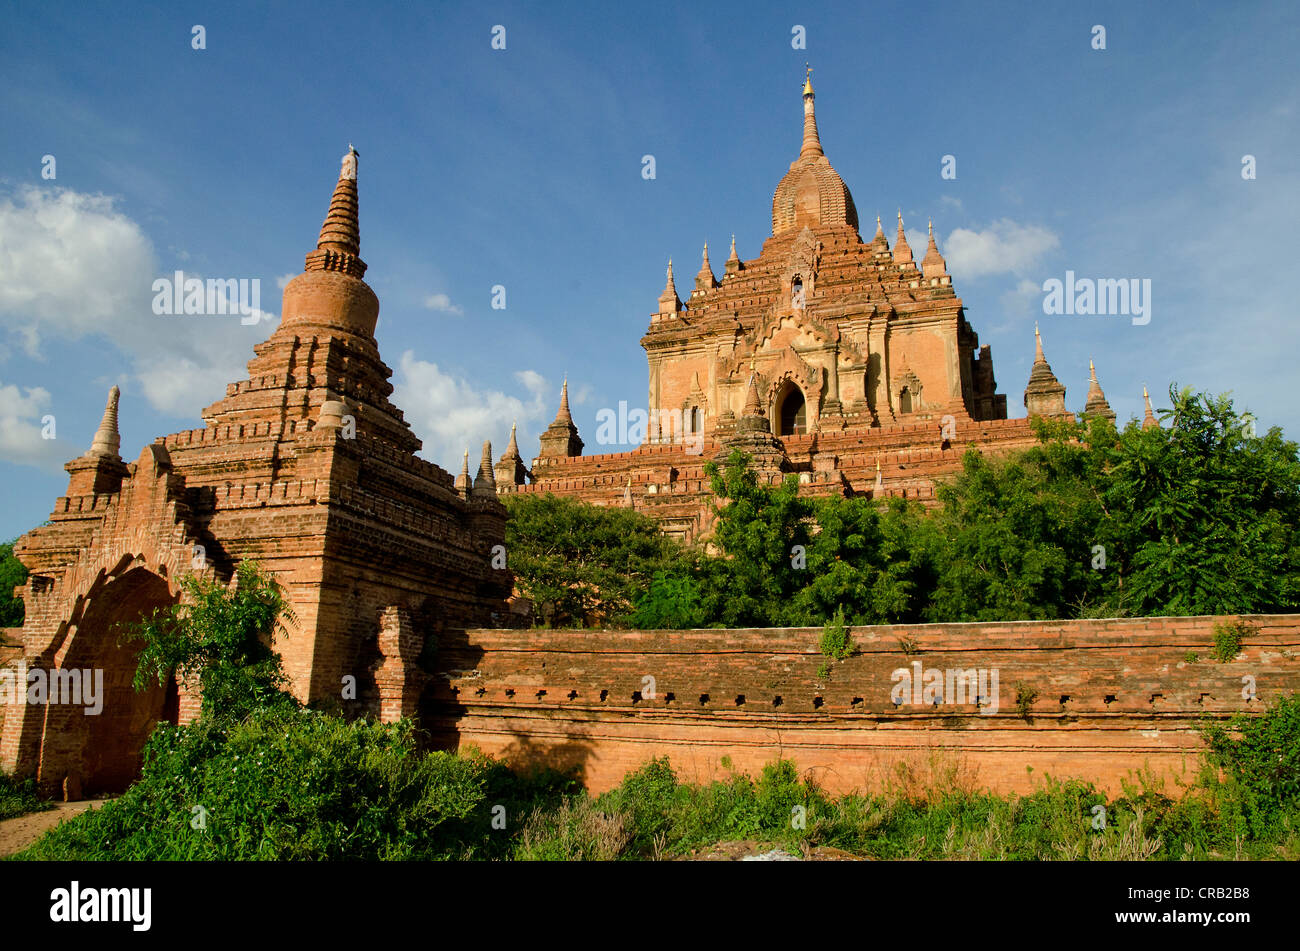 Tempio Htilominlo, con oltre 60 metri il più alto edificio in Bagan dal XIII secolo, uno degli ultimi grandi templi costruiti Foto Stock